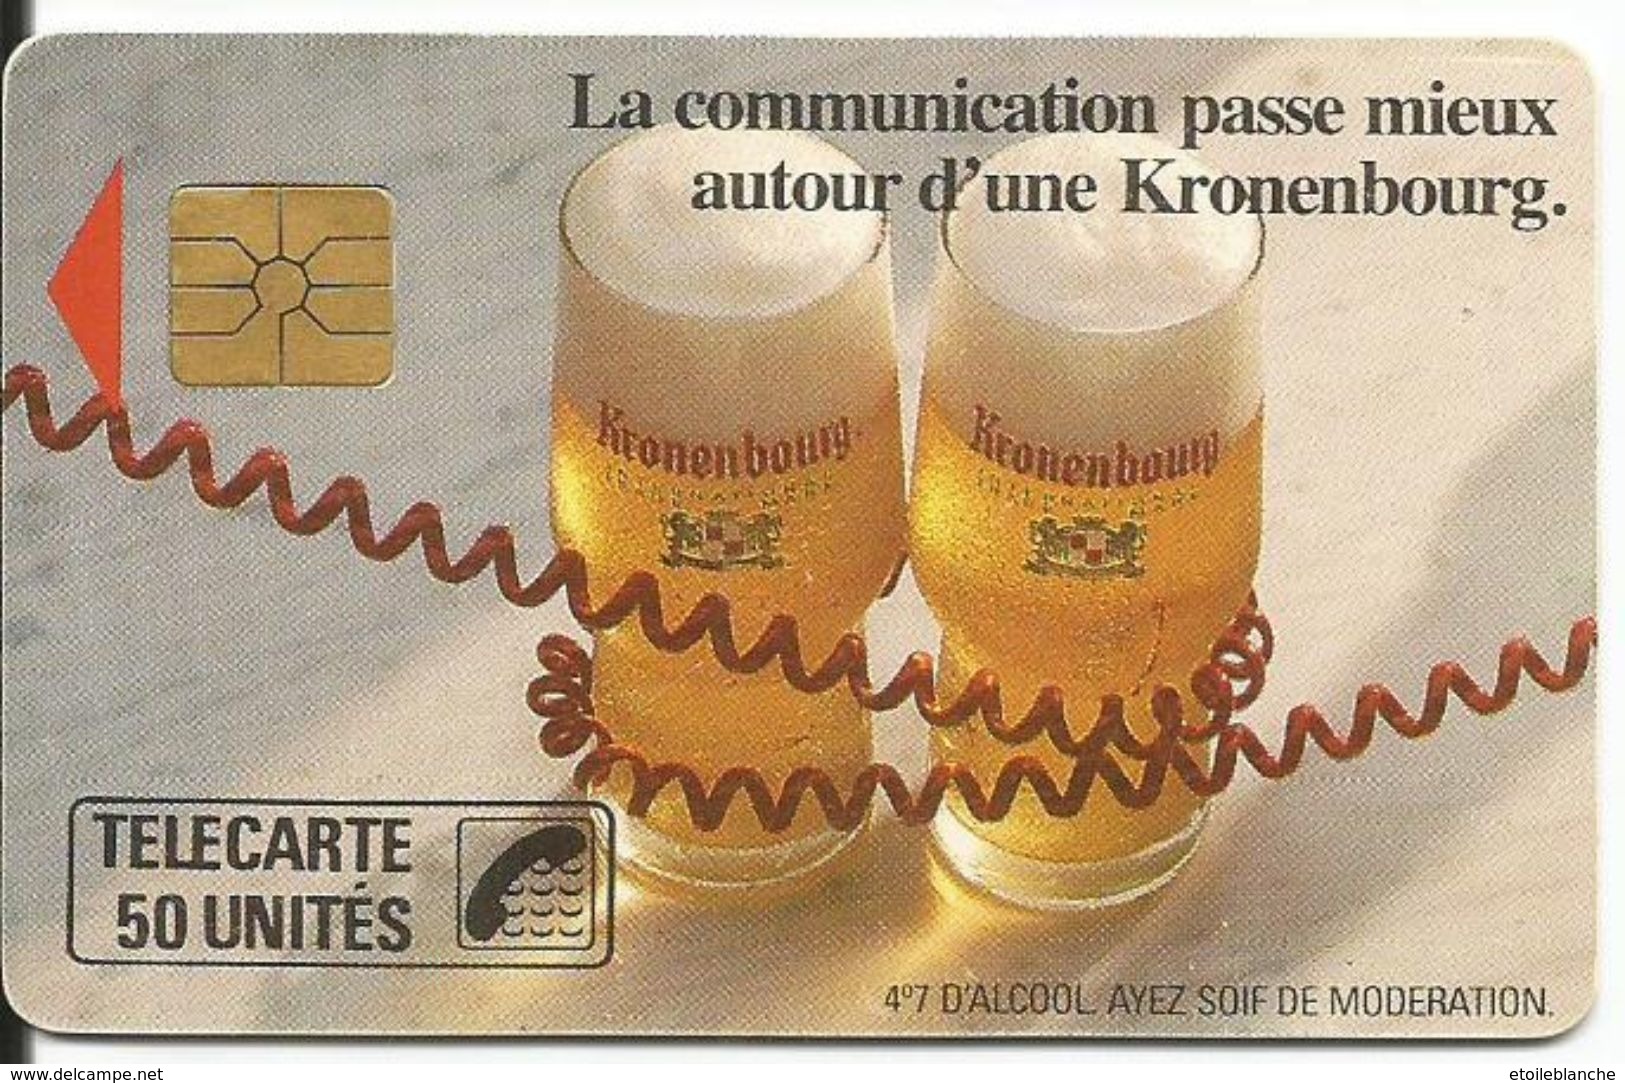 Telecarte Publicité, Bière Kronenbourg (alcool, Ayez Soif De Modération) - La Communication Passe Mieux (fil Téléphone) - Publicité